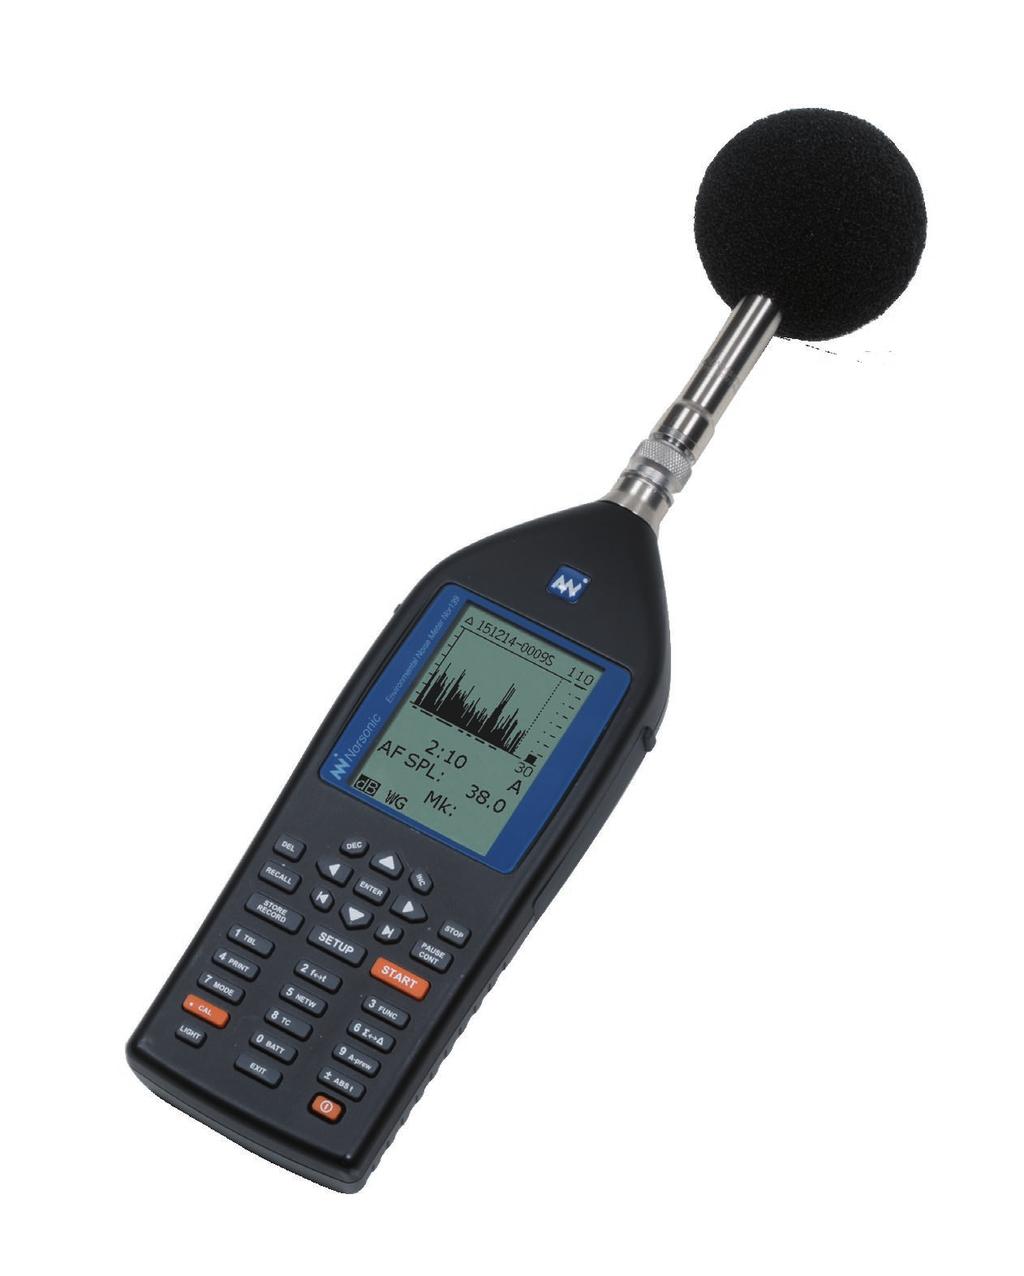 Nor139 Klass 1 ljudnivåmätare främst avsedd för mer avancerad loggande ljudmätning med ljudinspelning, marker och